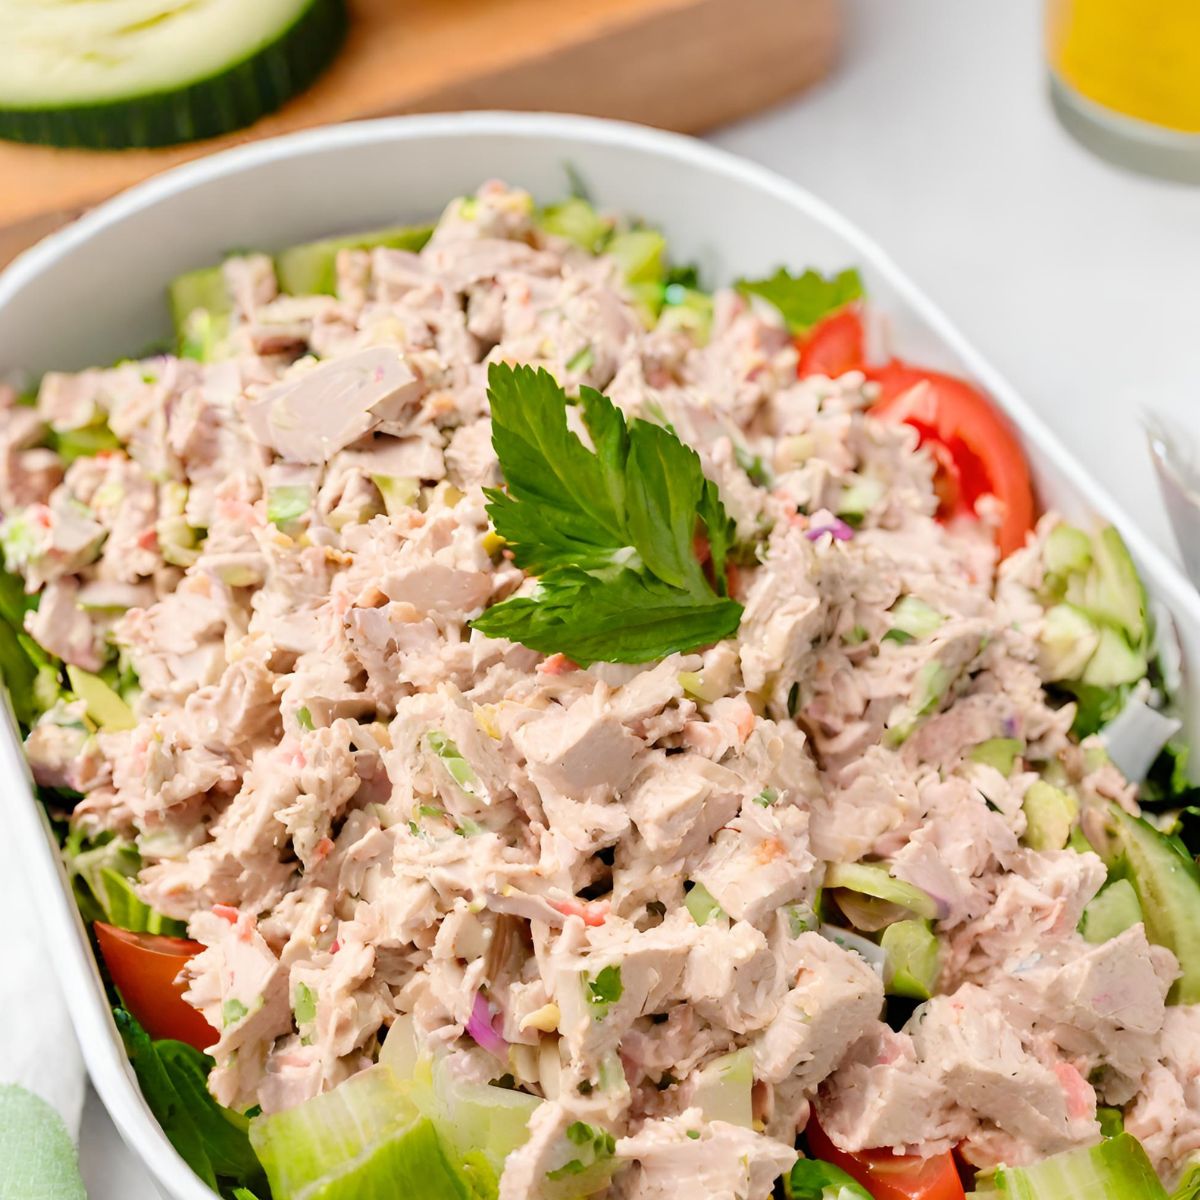 Tuna Salad Recipe "Quick and Delicious"